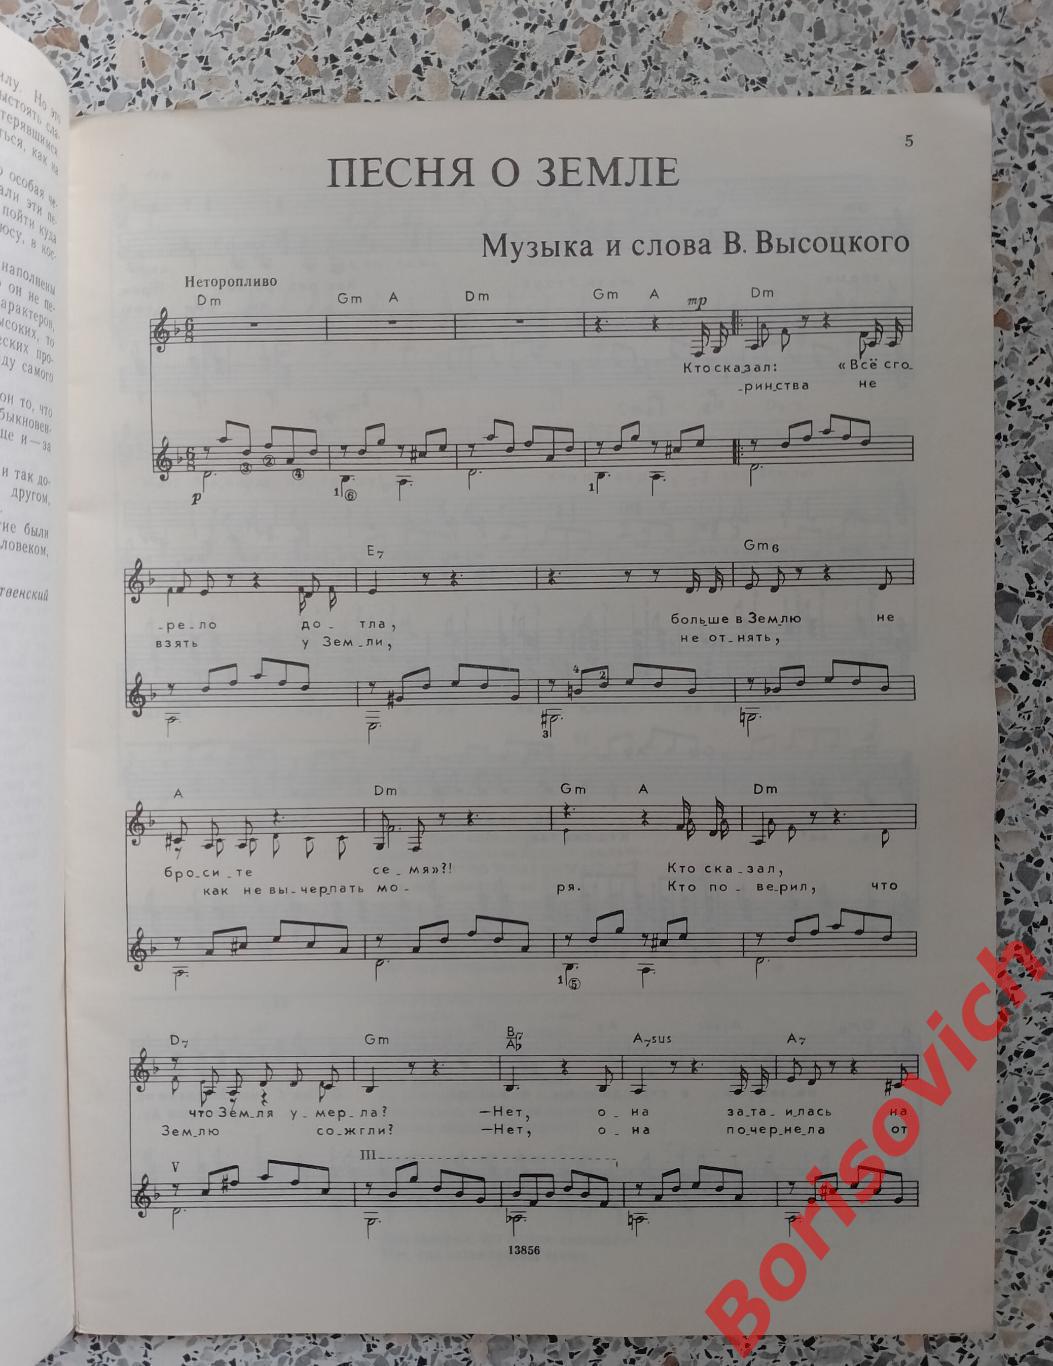 ПОЁТ ВЛАДИМИР ВЫСОЦКИЙ Песни для голоса в сопровождении гитары 1989 г 64 стр. 39 1